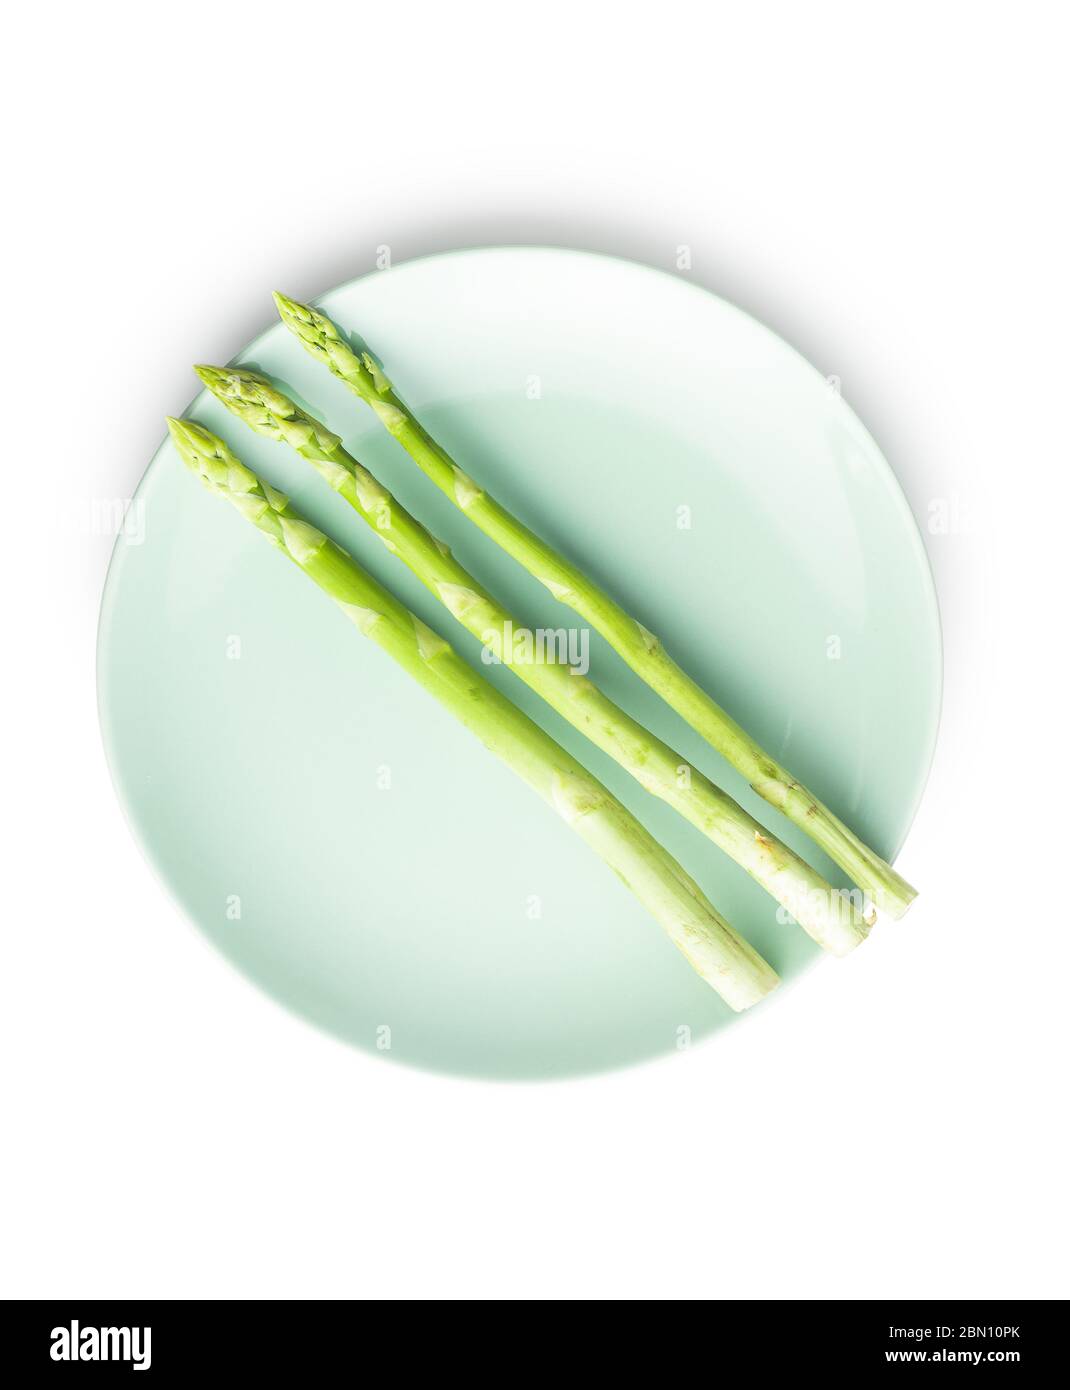 Asparagi verdi freschi sul piatto. Sano vegetale stagionale isolato su sfondo bianco. Foto Stock